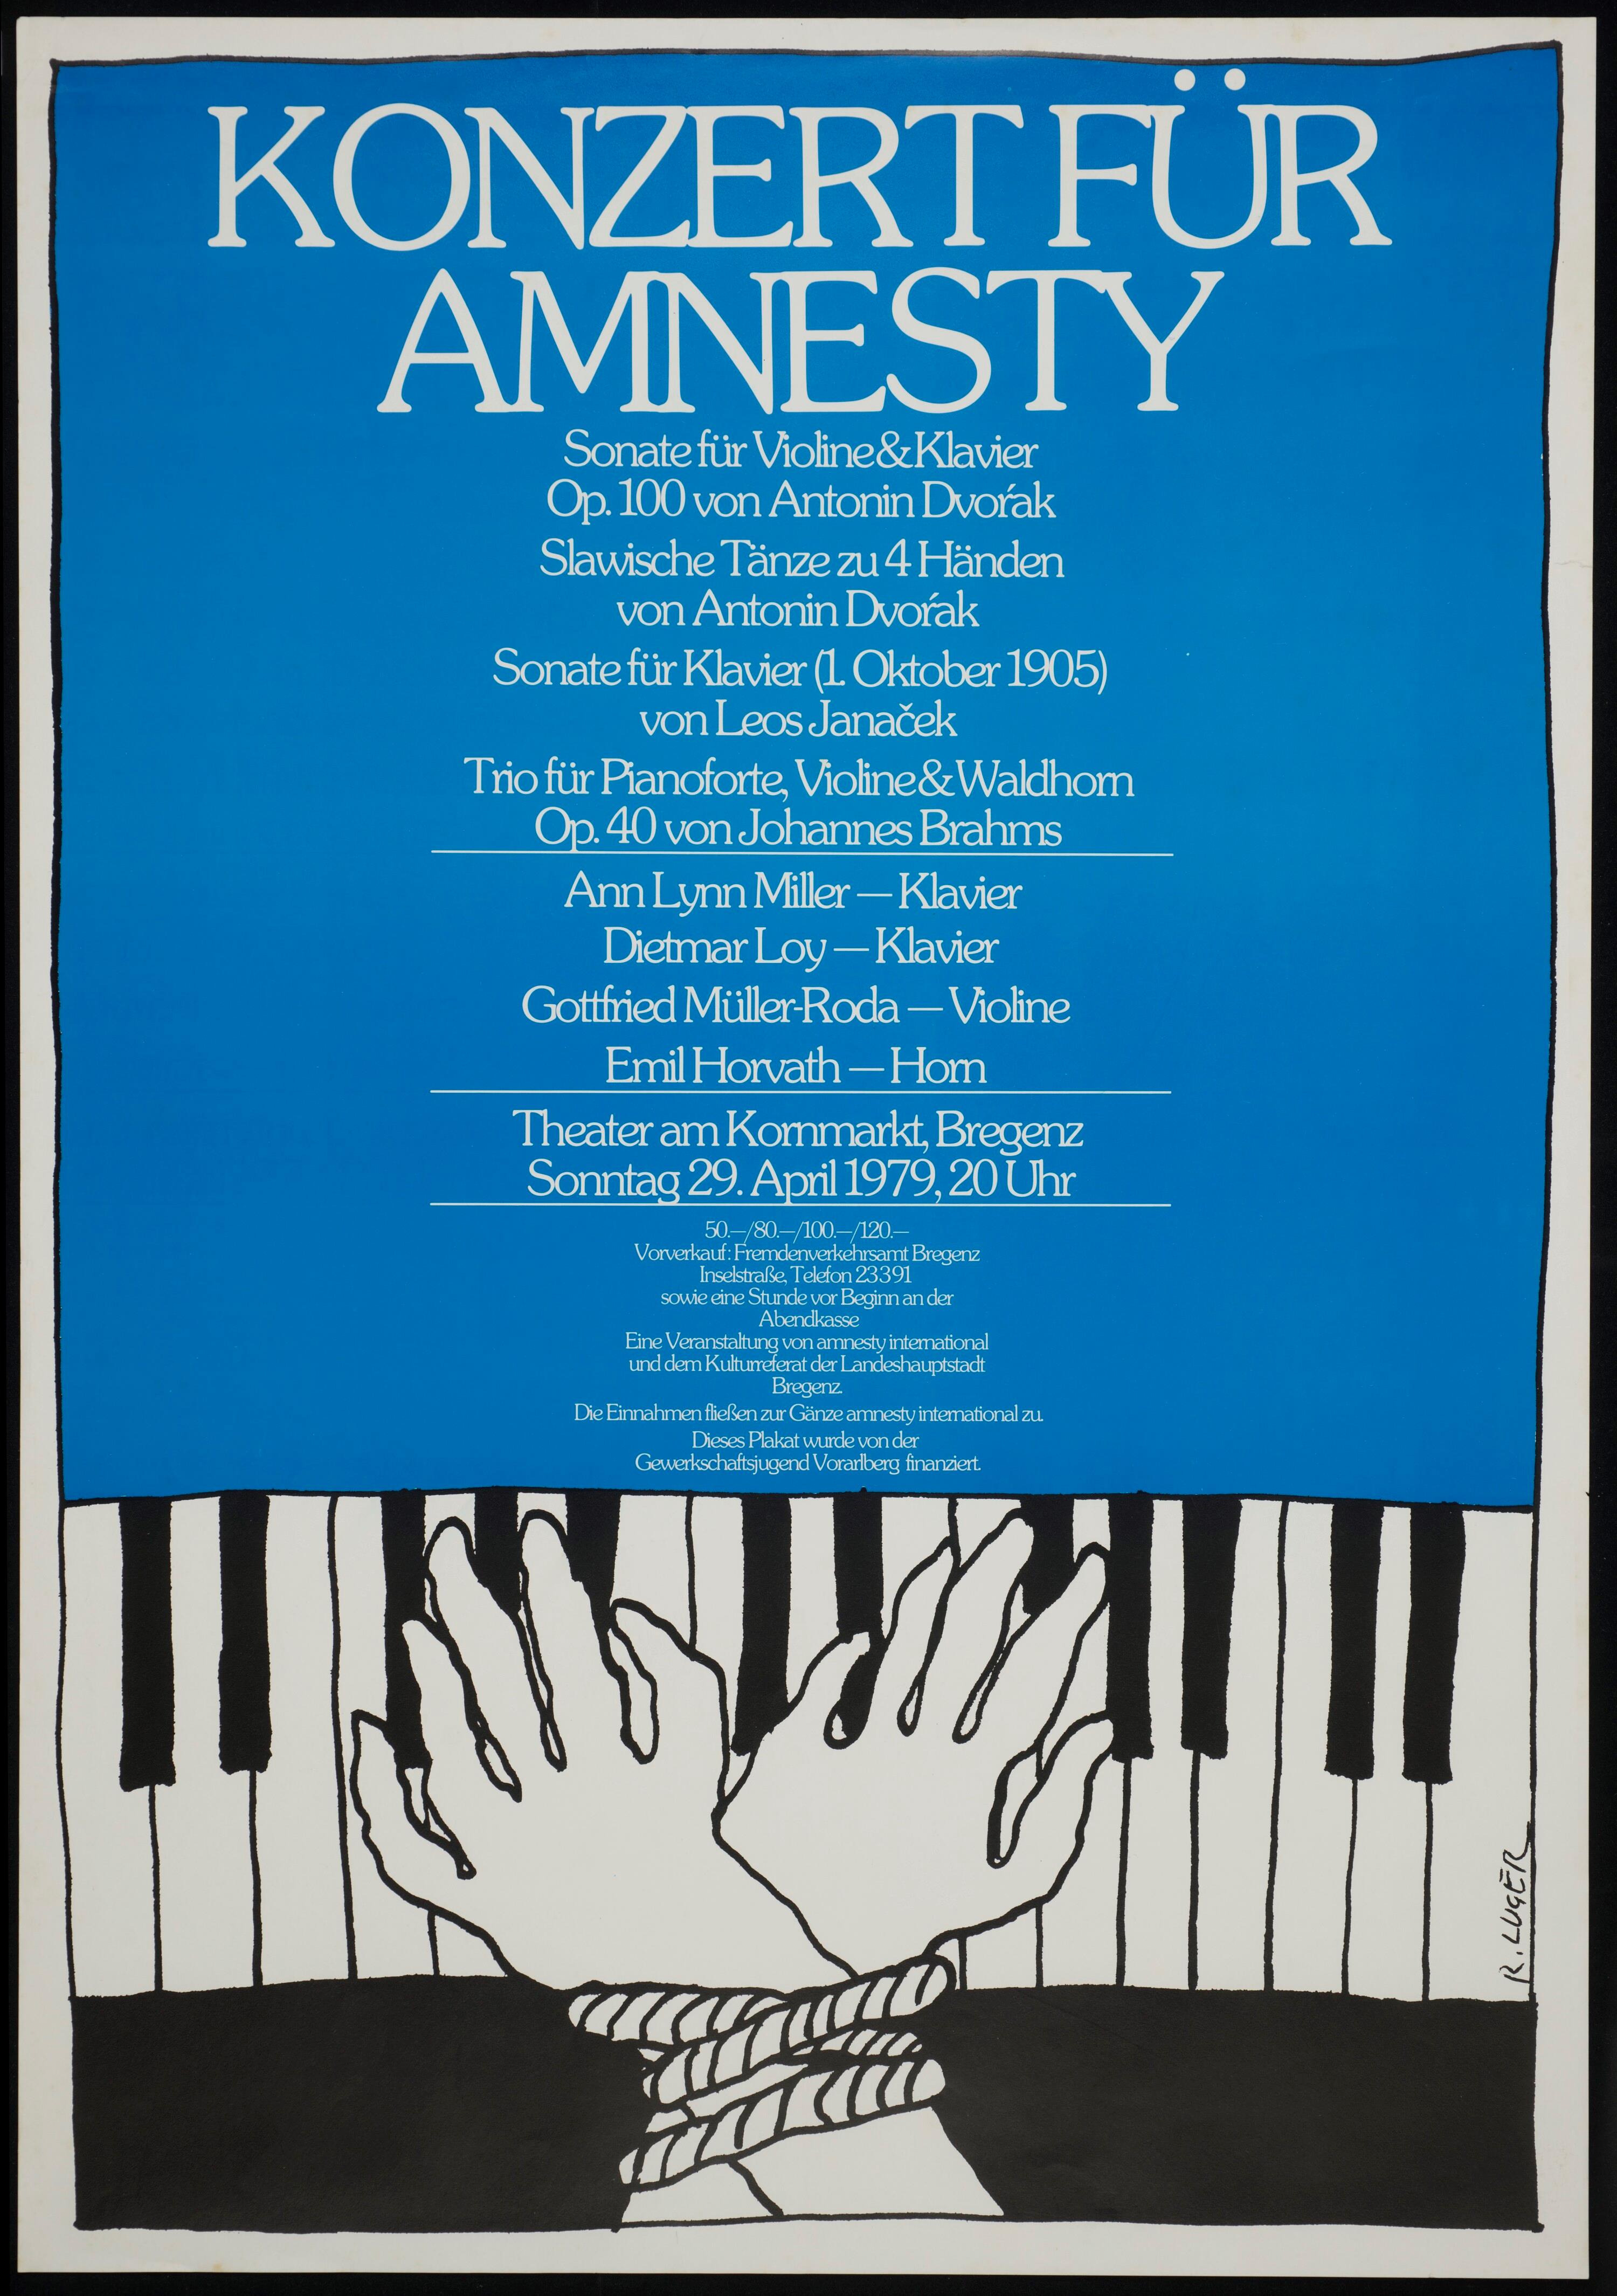 Konzert für Amnesty></div>


    <hr>
    <div class=